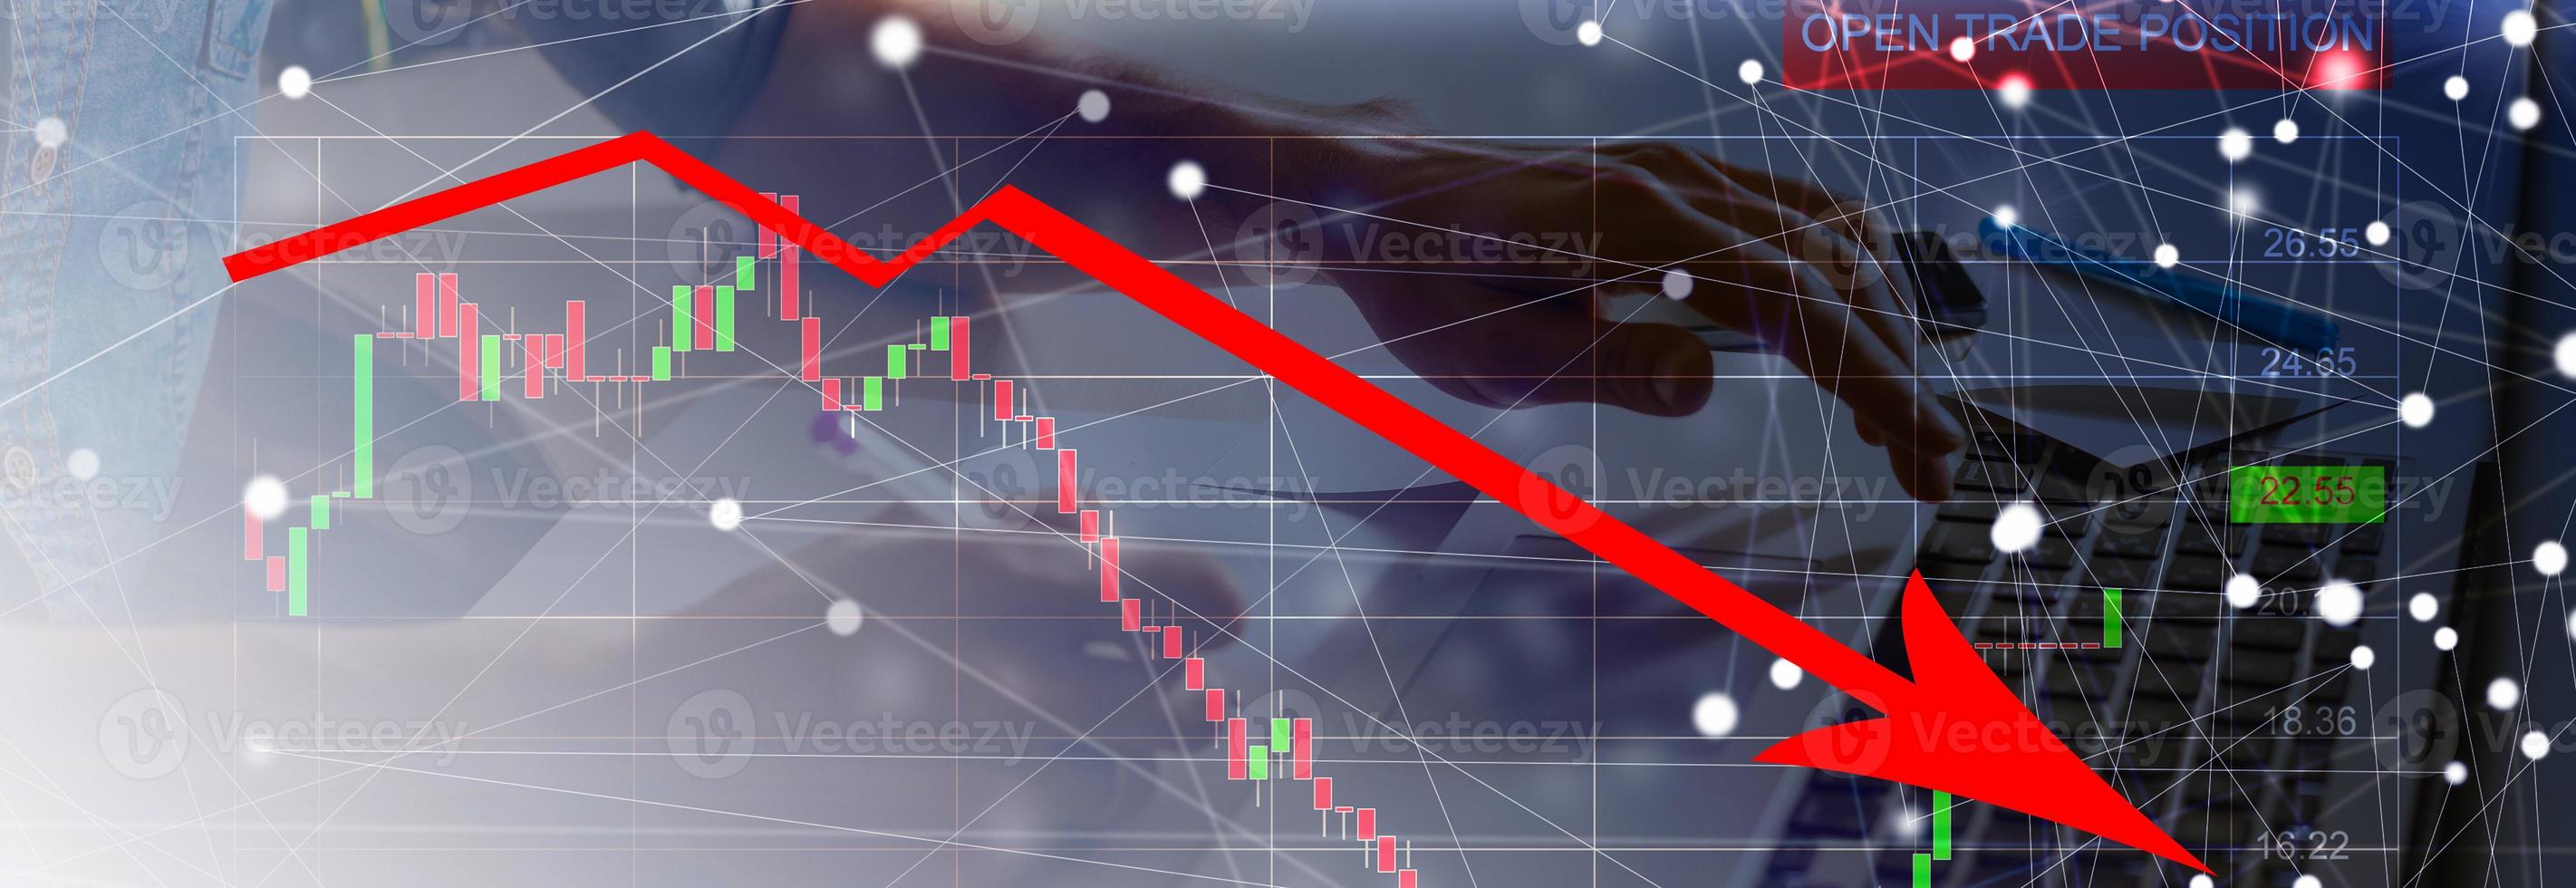 a econômico crise do 2020. vermelho Setas; flechas outono para a chão, indicando a econômico recessão este vai ocorrer dentro 2020. foto